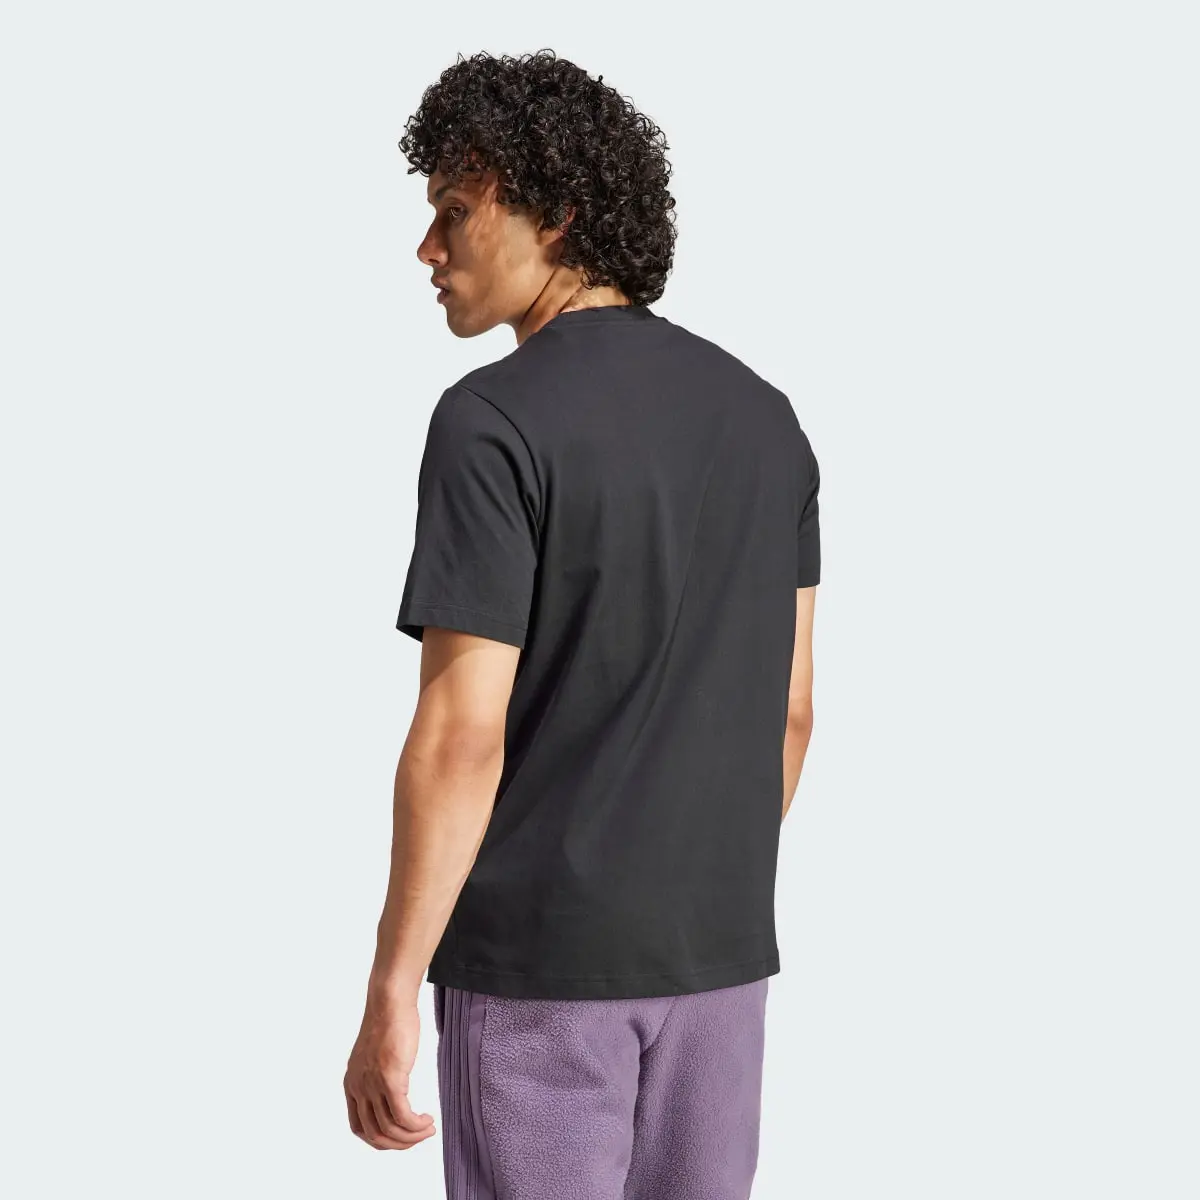 Adidas Tiro Graphic Tişört. 3